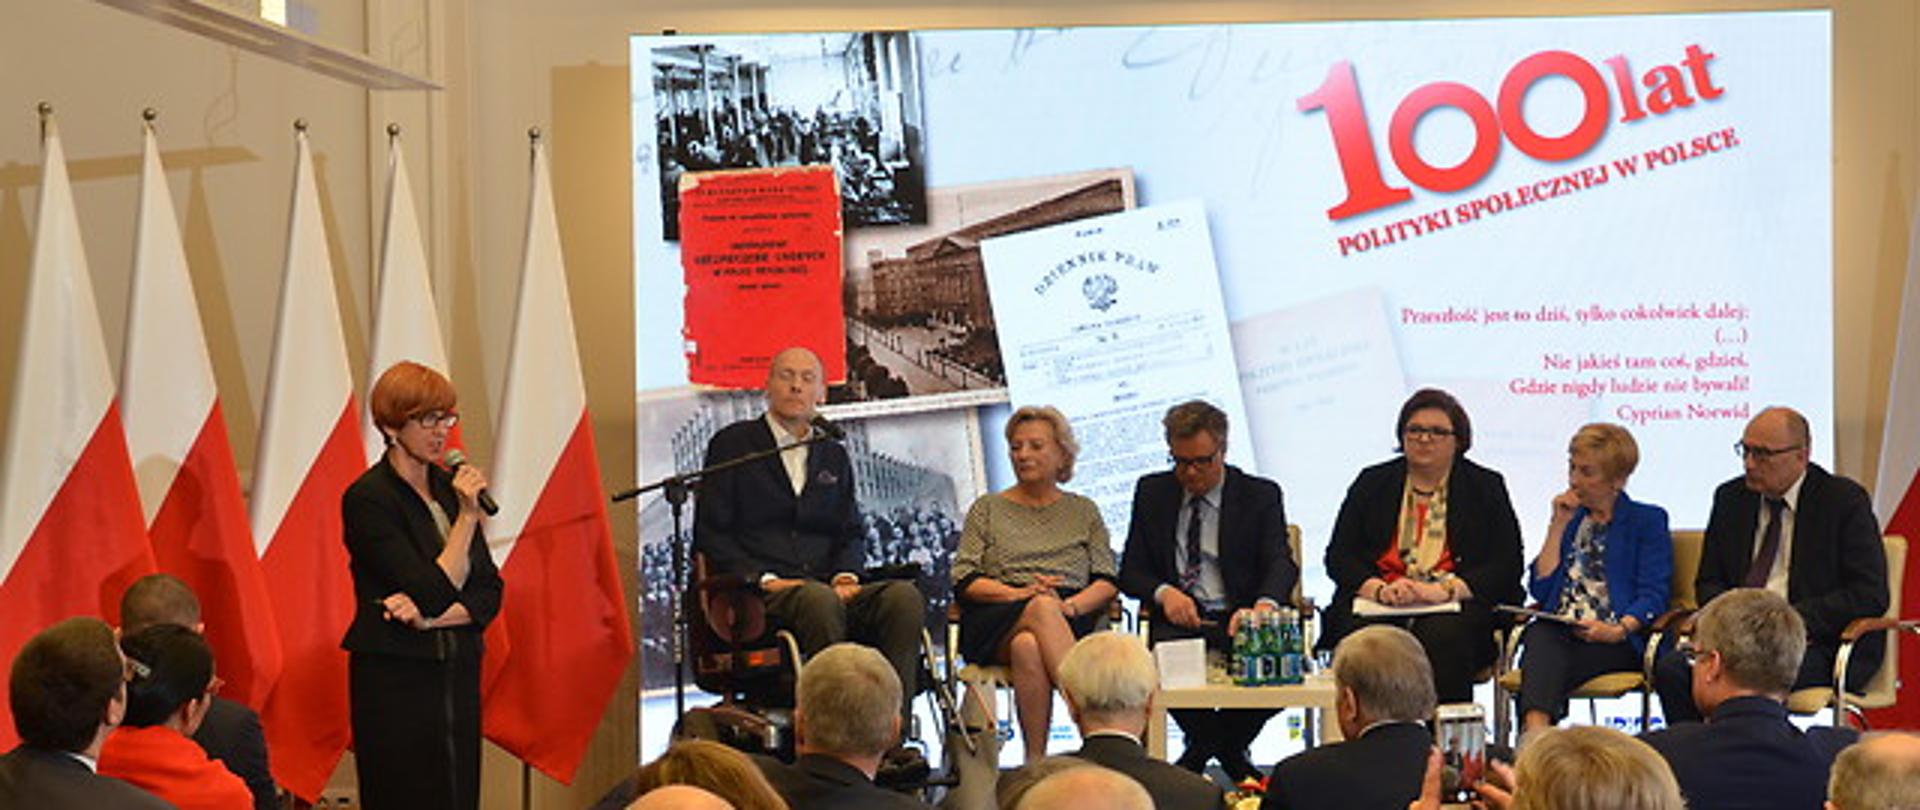 Konferencja "100-lecie polityki społecznej w Polsce".